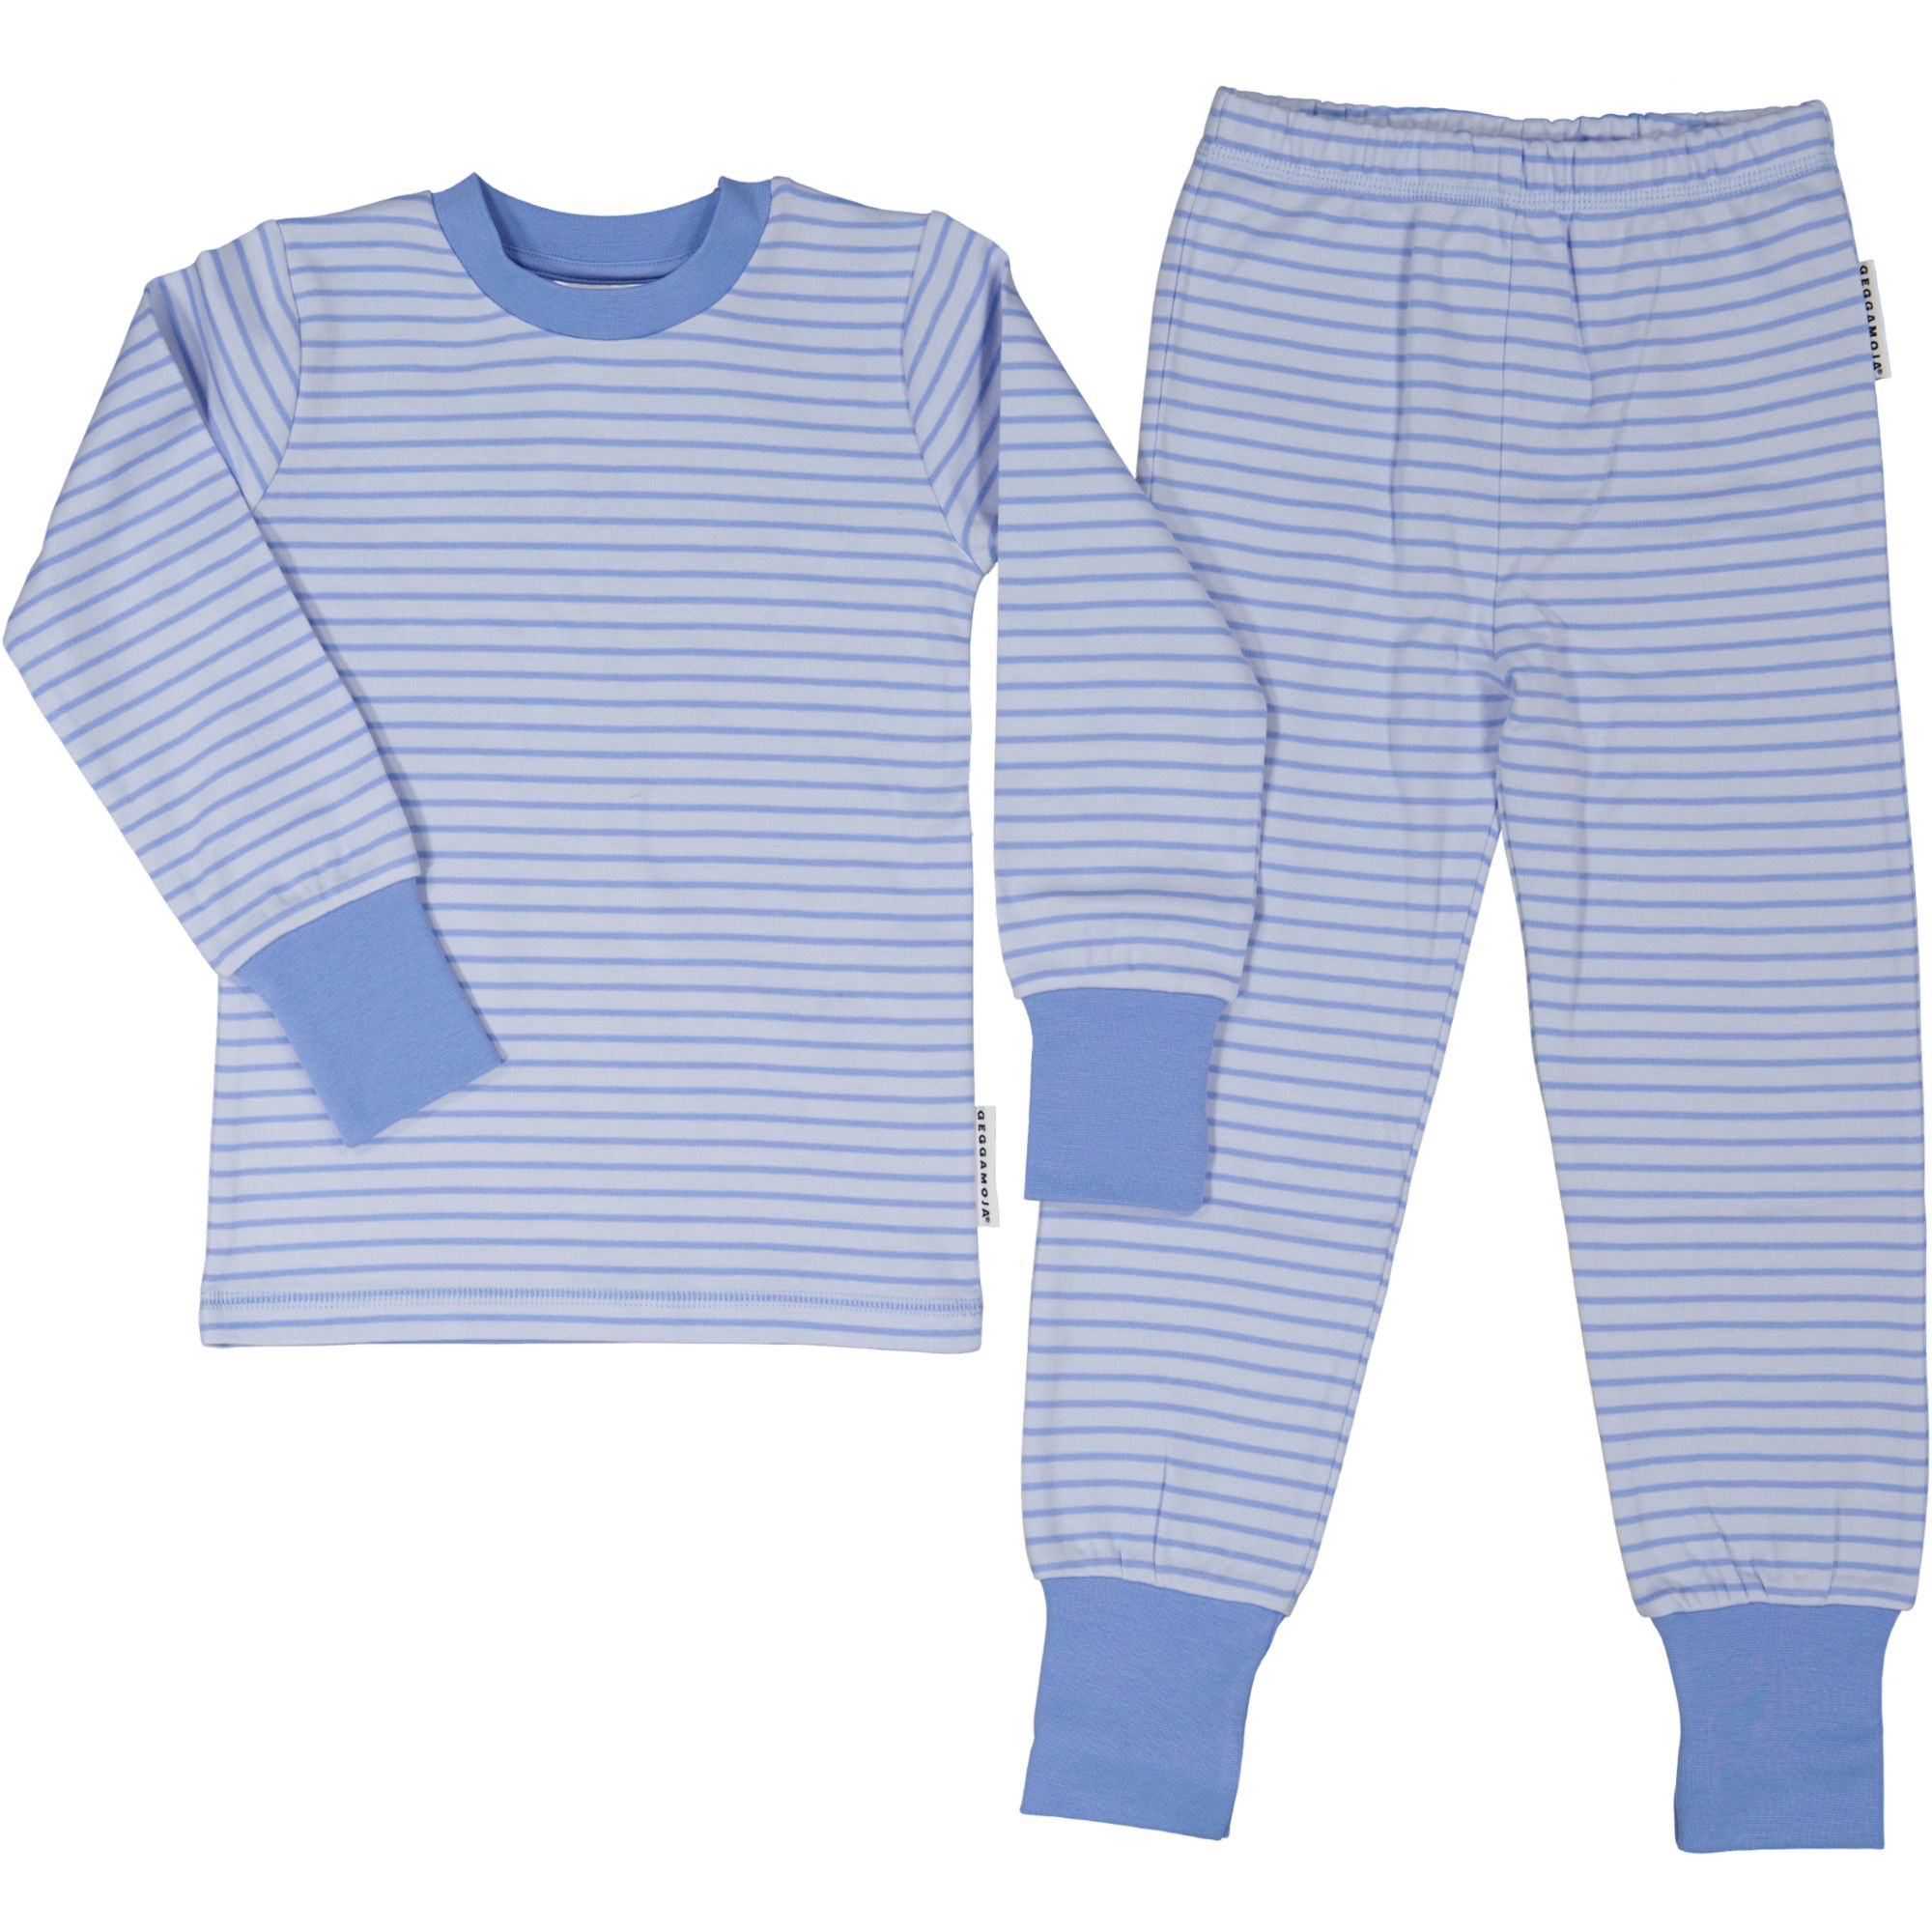 Two pcs pyjamas Light blue/blue  122/128